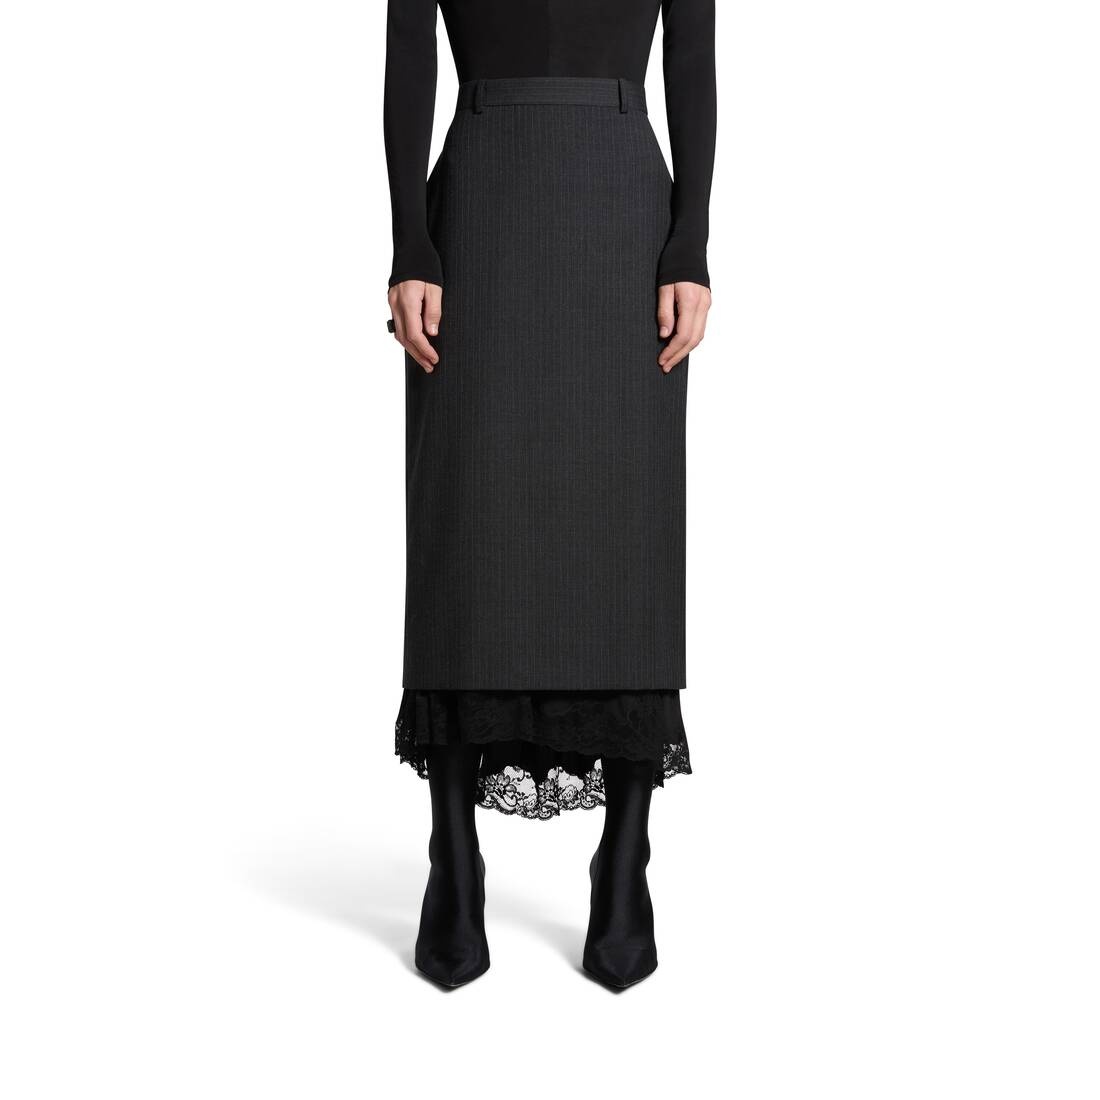 Women's Lingerie Tailored Skirt in Dark Grey - 5